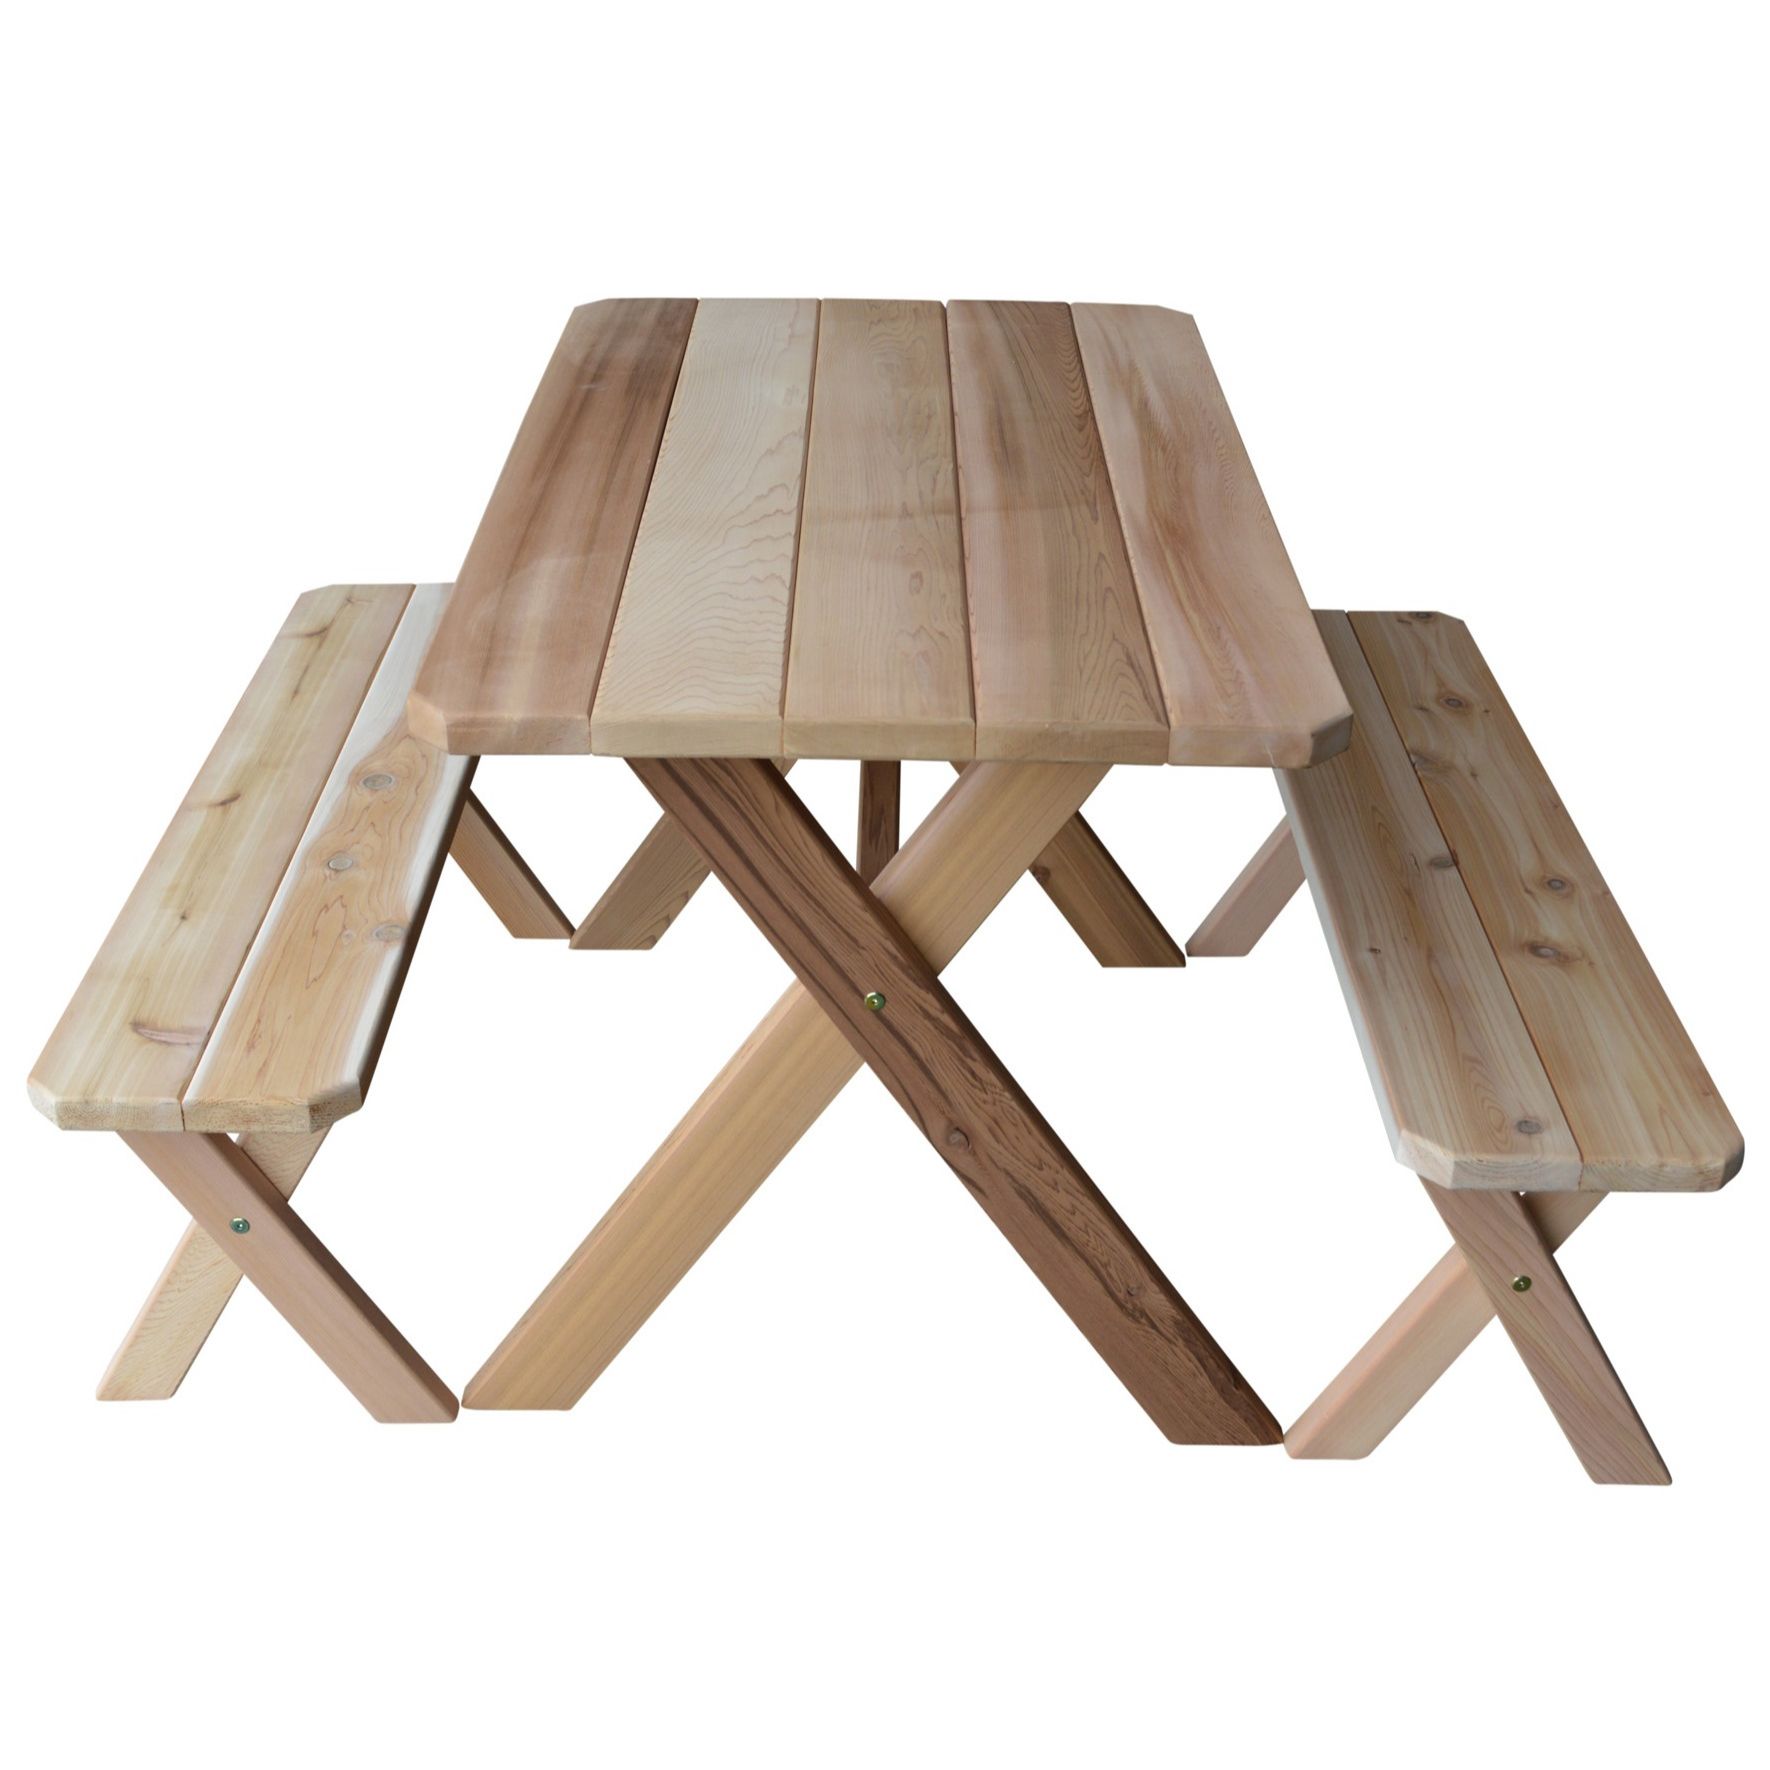 Cedar Cross Leg Picnic Table with Benches